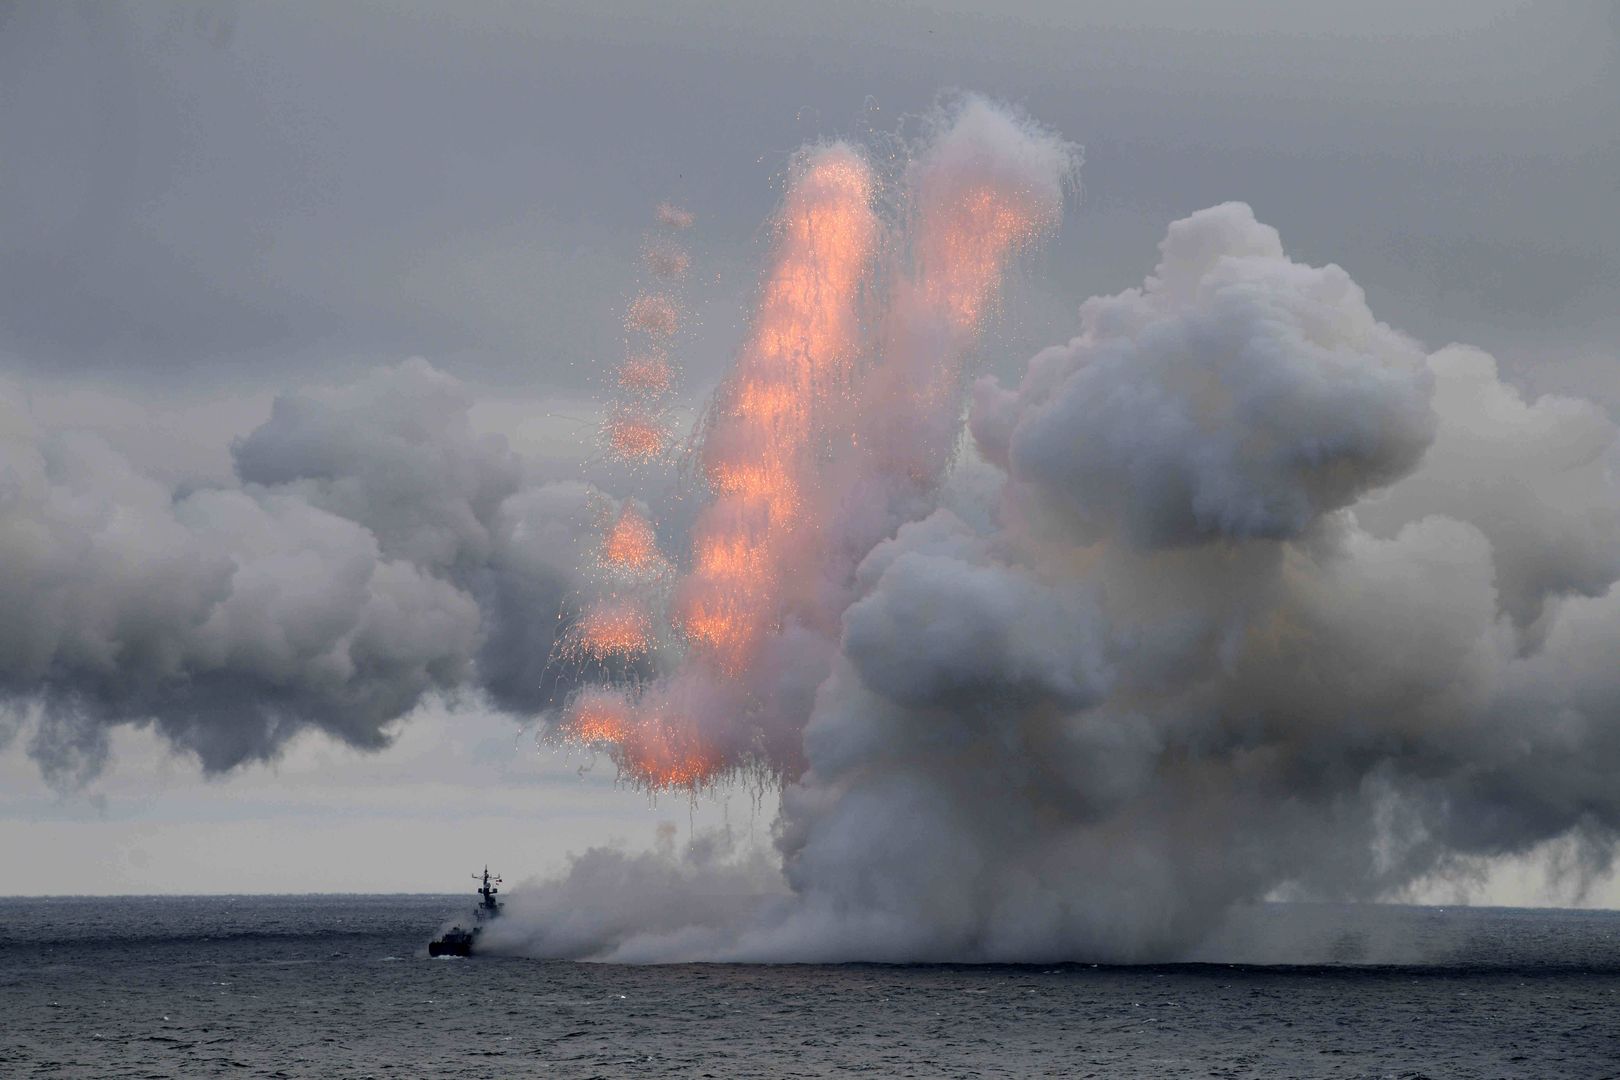 Rosjanie zmniejszają liczbę okrętów. "Ryzyko ataków nadal wysokie"